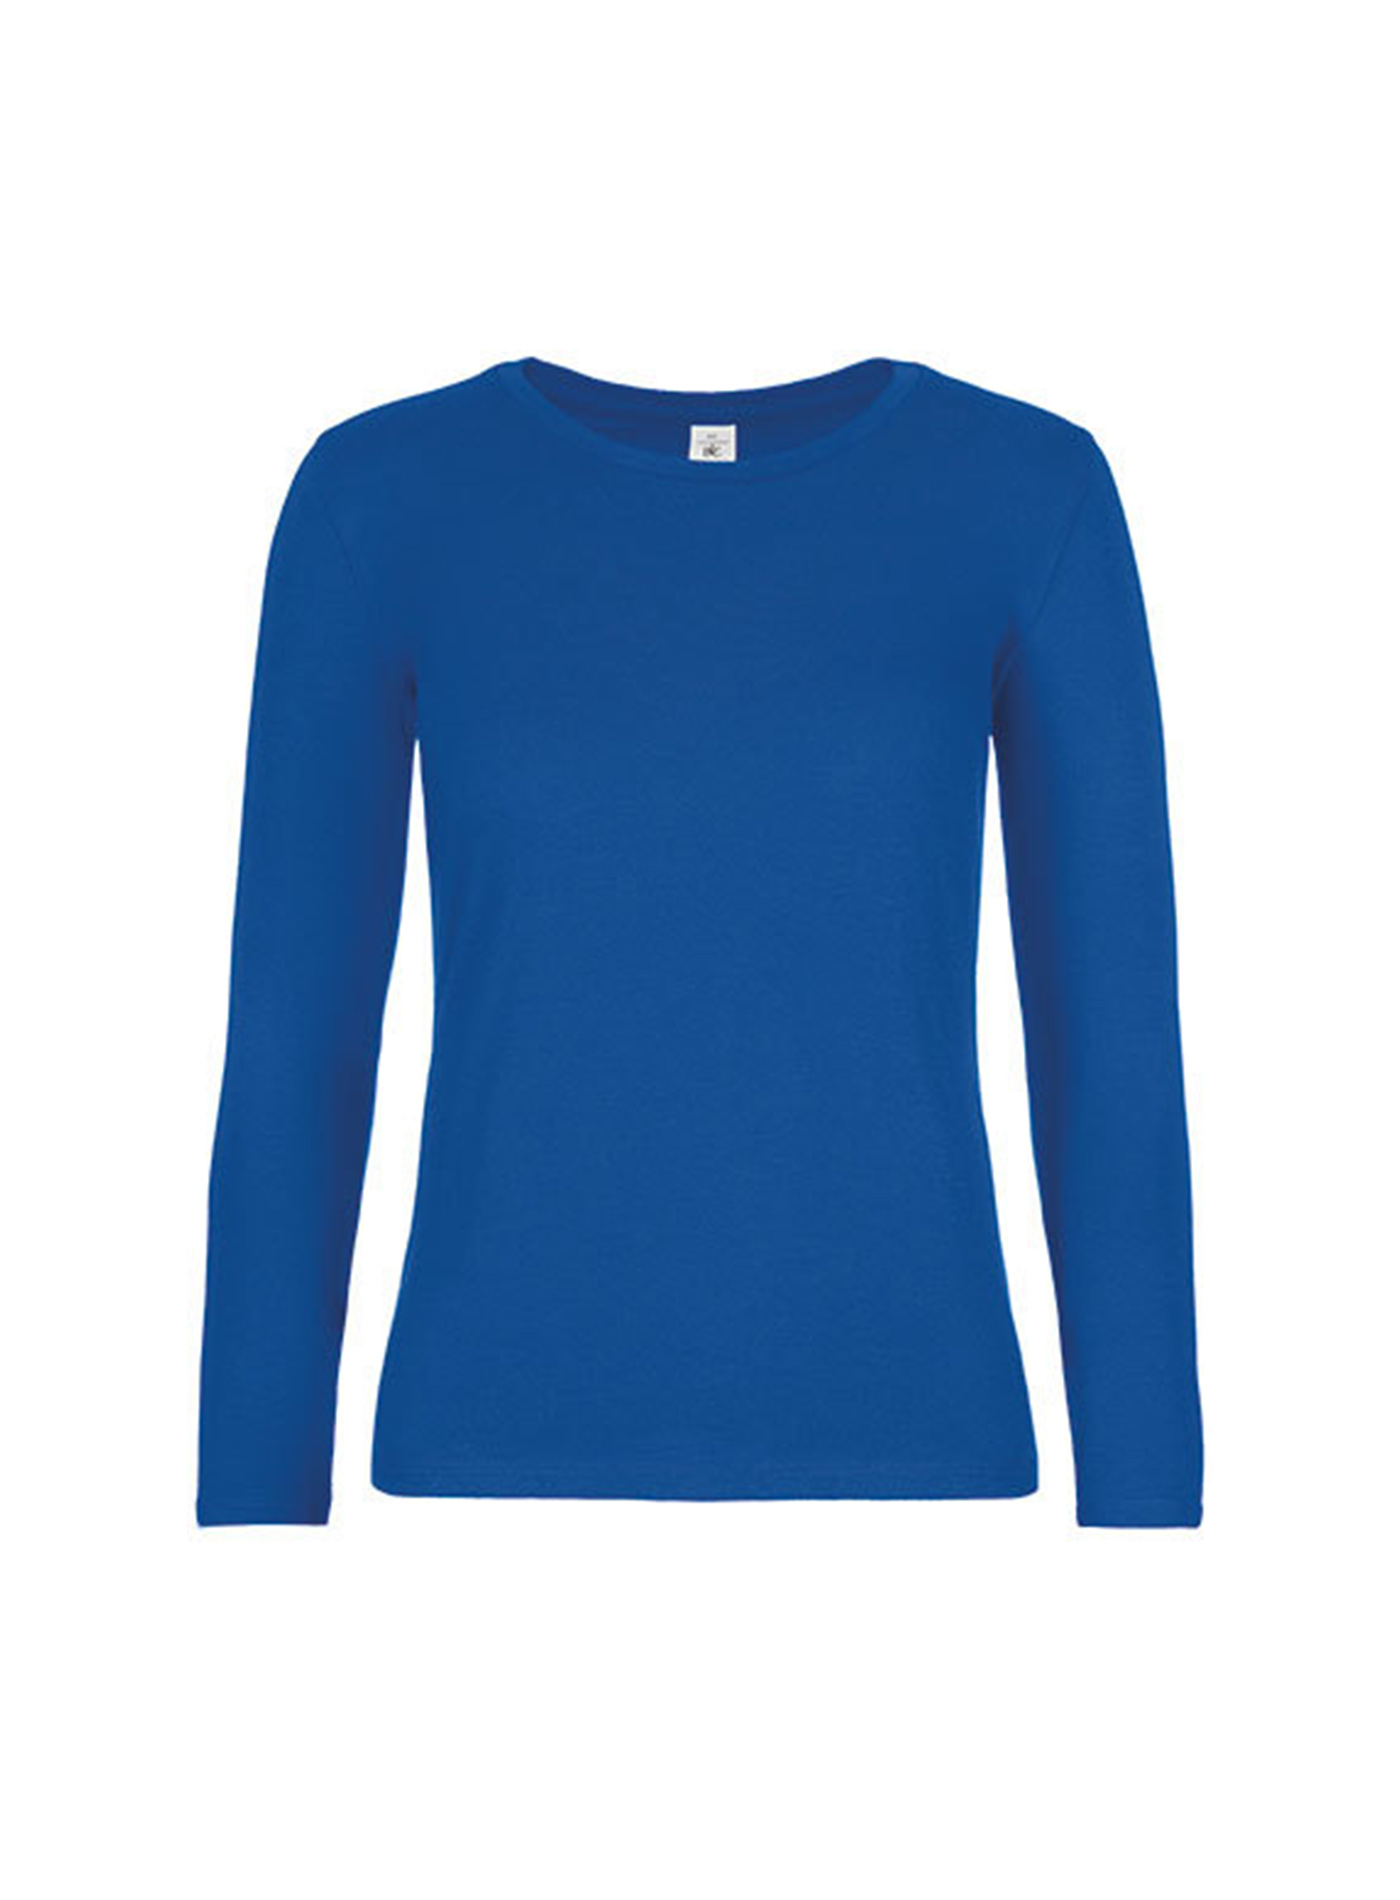 Dámské tričko s dlouhým rukávem B&C Collection - Královská modrá M